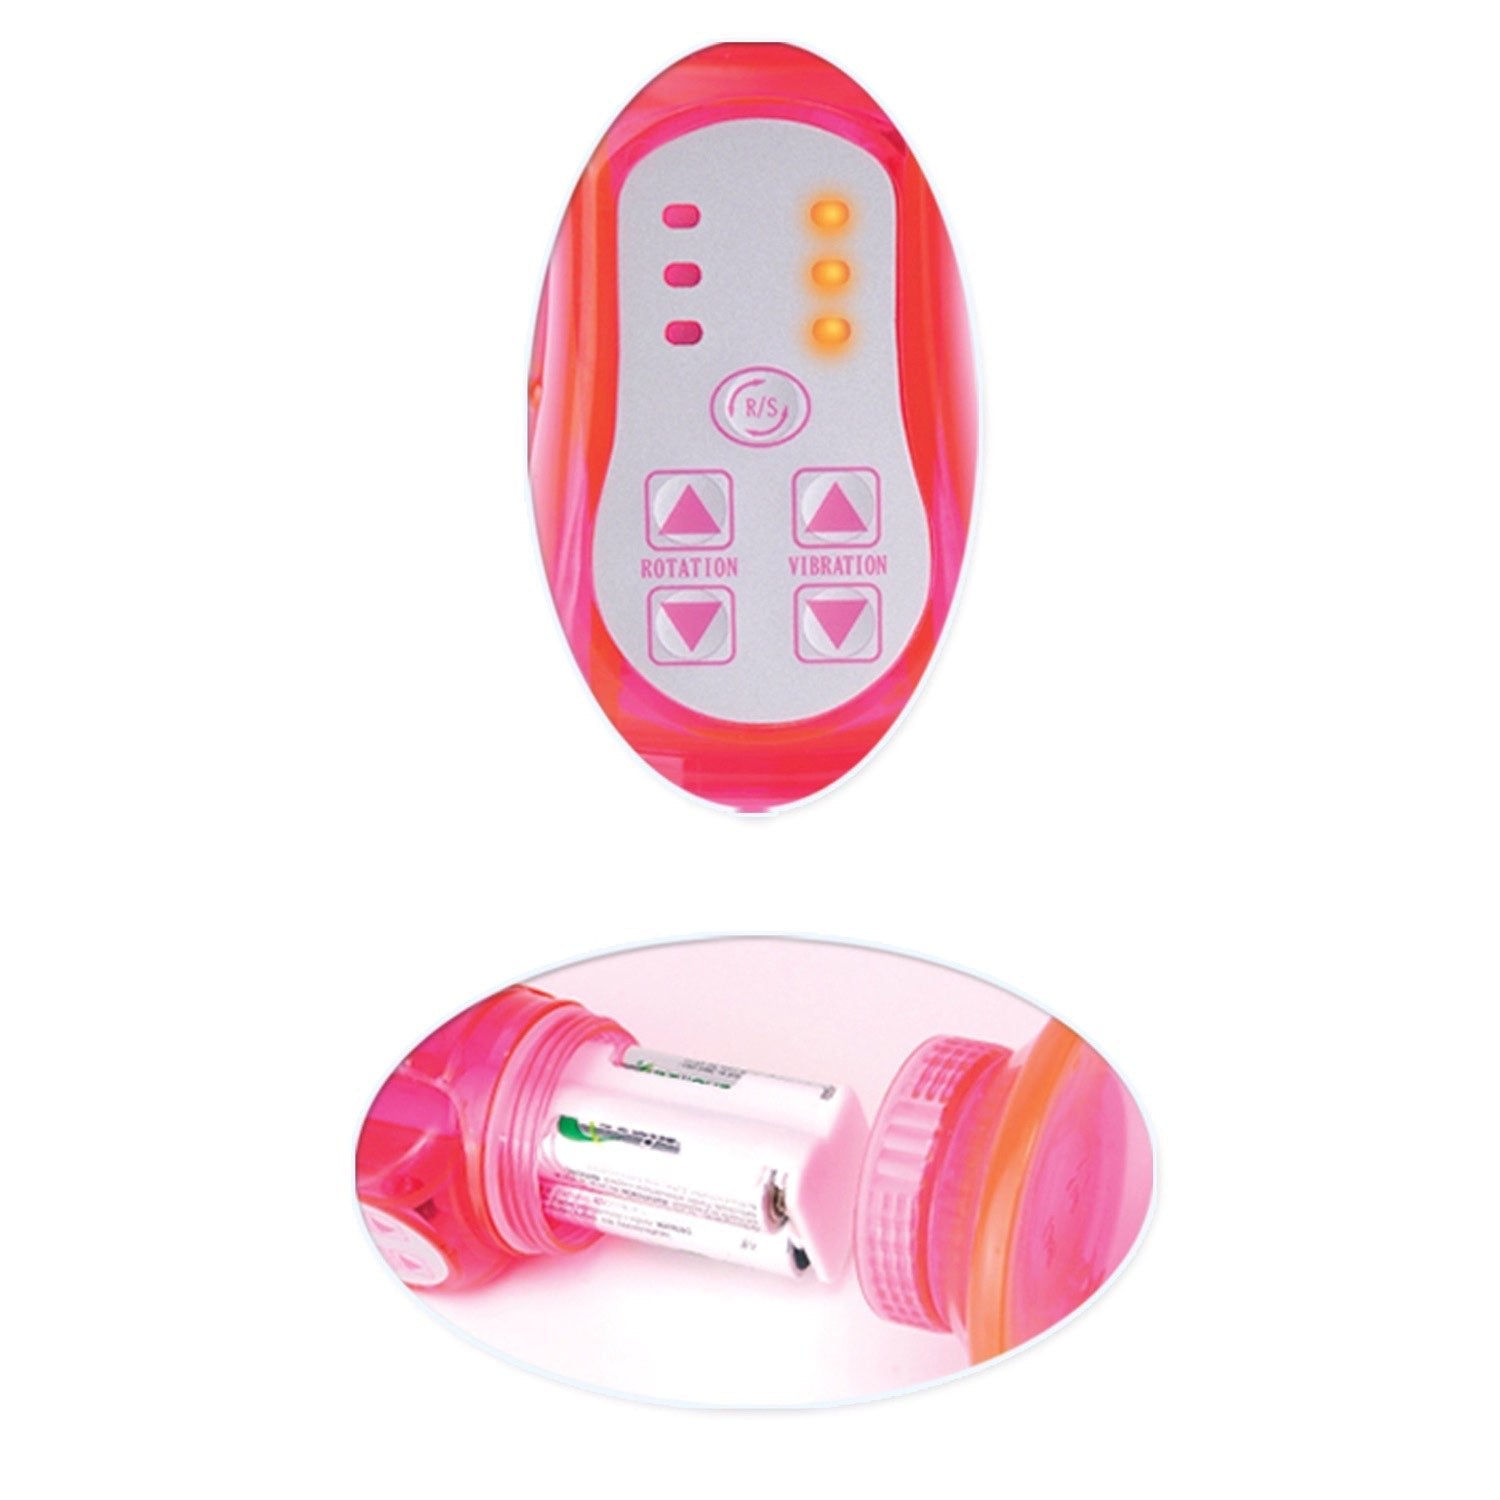  豪华旋转壁式摇杆 - 粉色 7 英寸珍珠振动器，带兔子阴蒂刺激器 by Pipedream